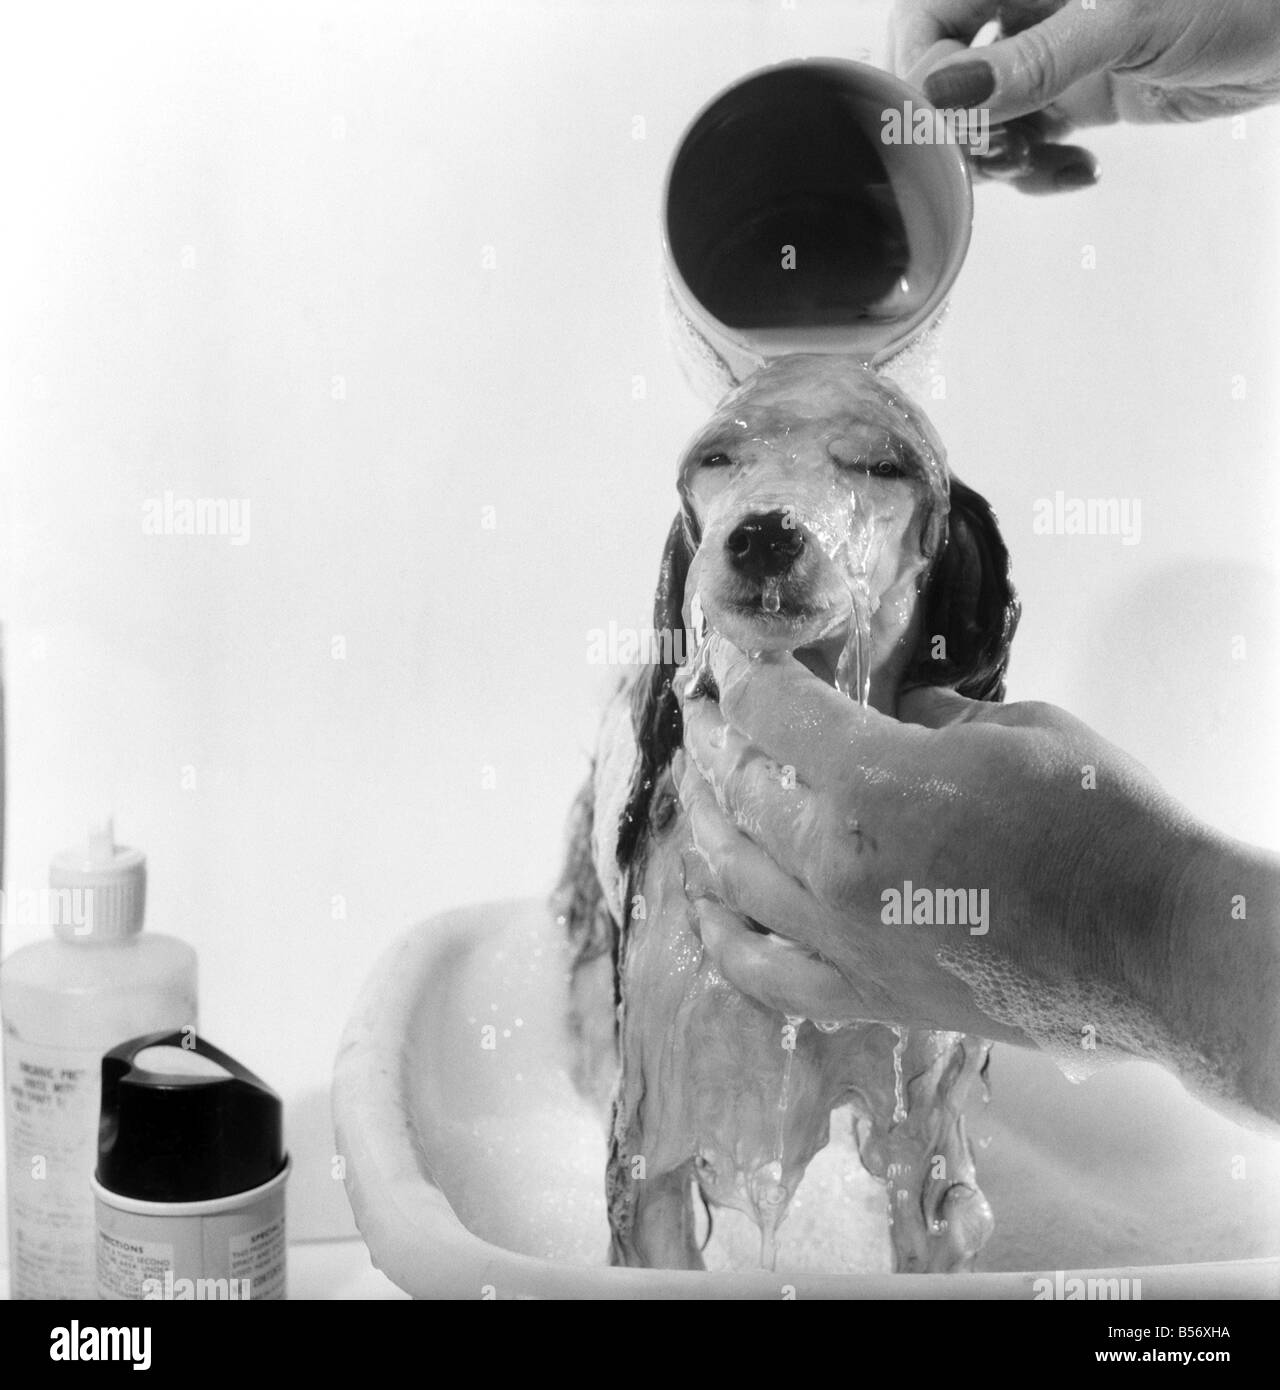 Barboncino posseduti da Miss Marilyn Willis visto qui come ottenere il completo trattamento di bellezza, shampoo e manicure presso il locale salone di bellezza. Gennaio 1975 75-00353-002 Foto Stock